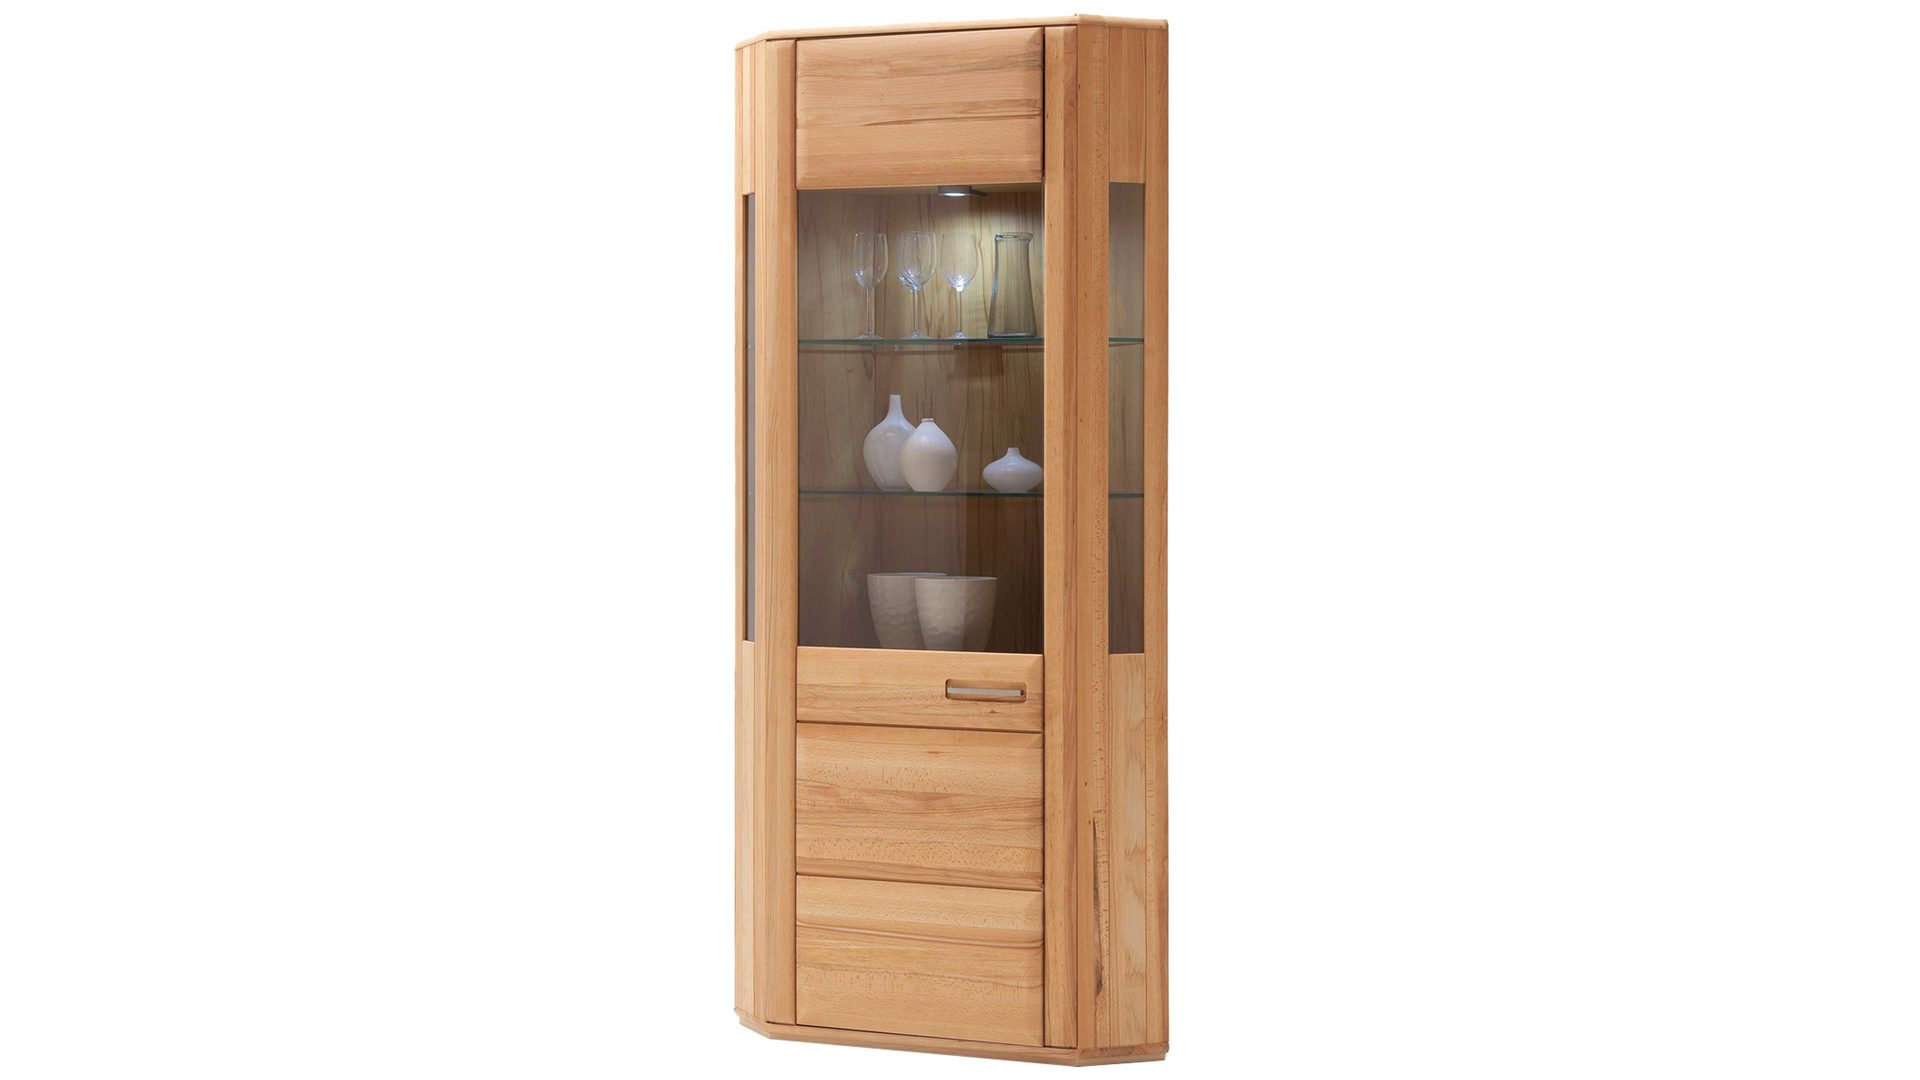 Vitrine Mca furniture aus Holz in Holzfarben Wohnprogramm Sena - Eckvitrine als Wohnzimmermöbel geölte Kernbuche – eine Tür